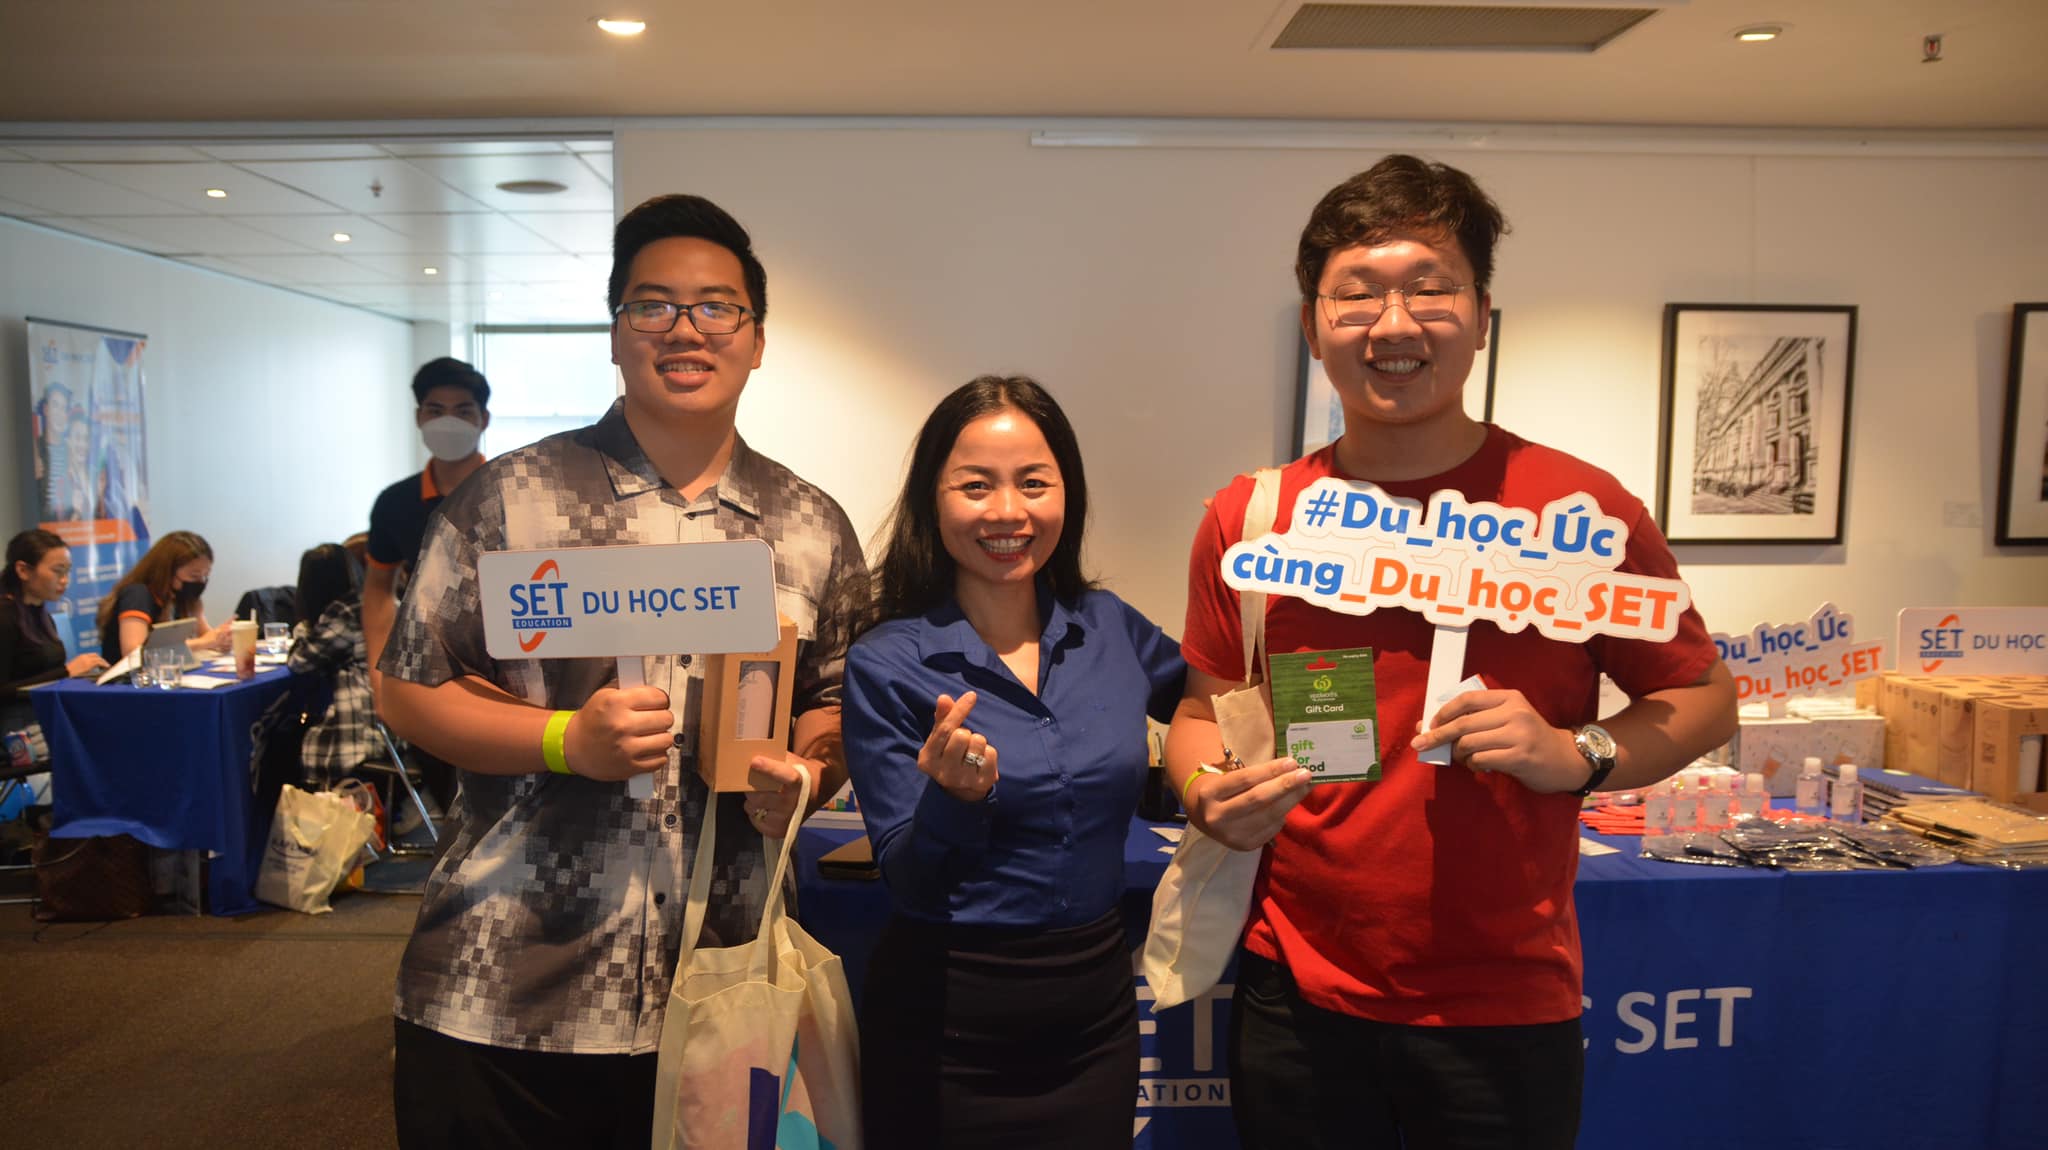 [Hanoi] Triển lãm du học Úc 2022 tại Hà Nội “Hòa nhịp an toàn - Khởi động hành trình”